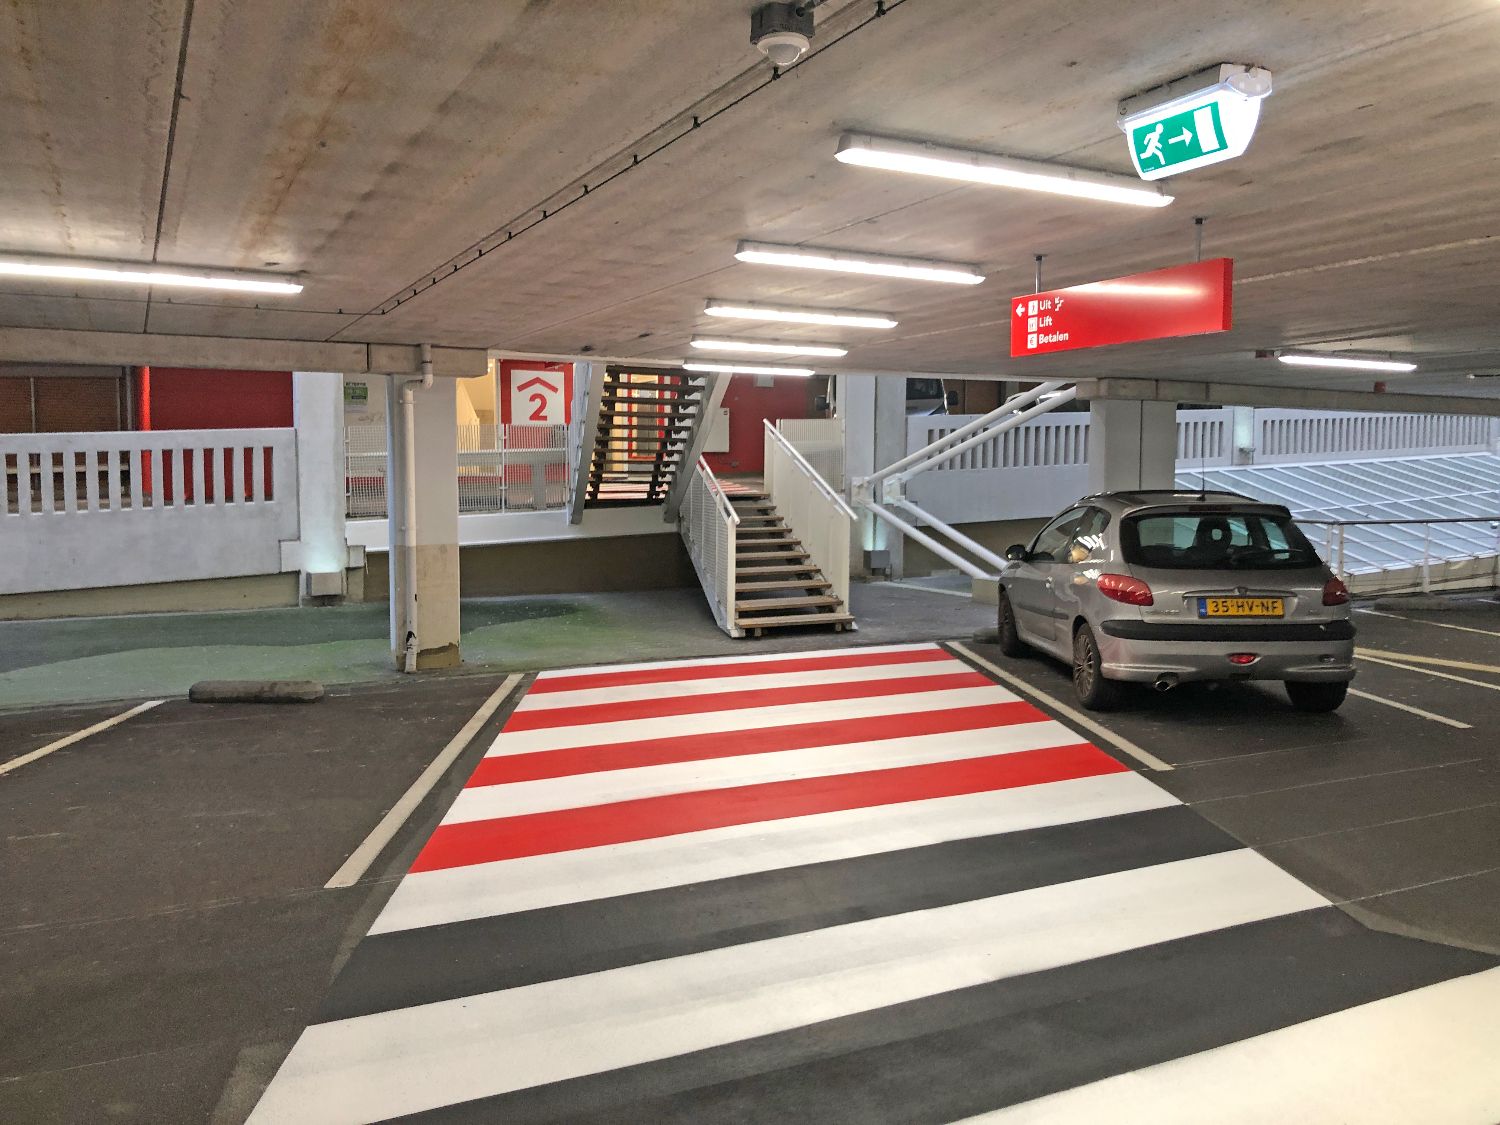 Voetgangersroutebord en belijning in parkeergarage De Opgang gemeente Amsterdam.